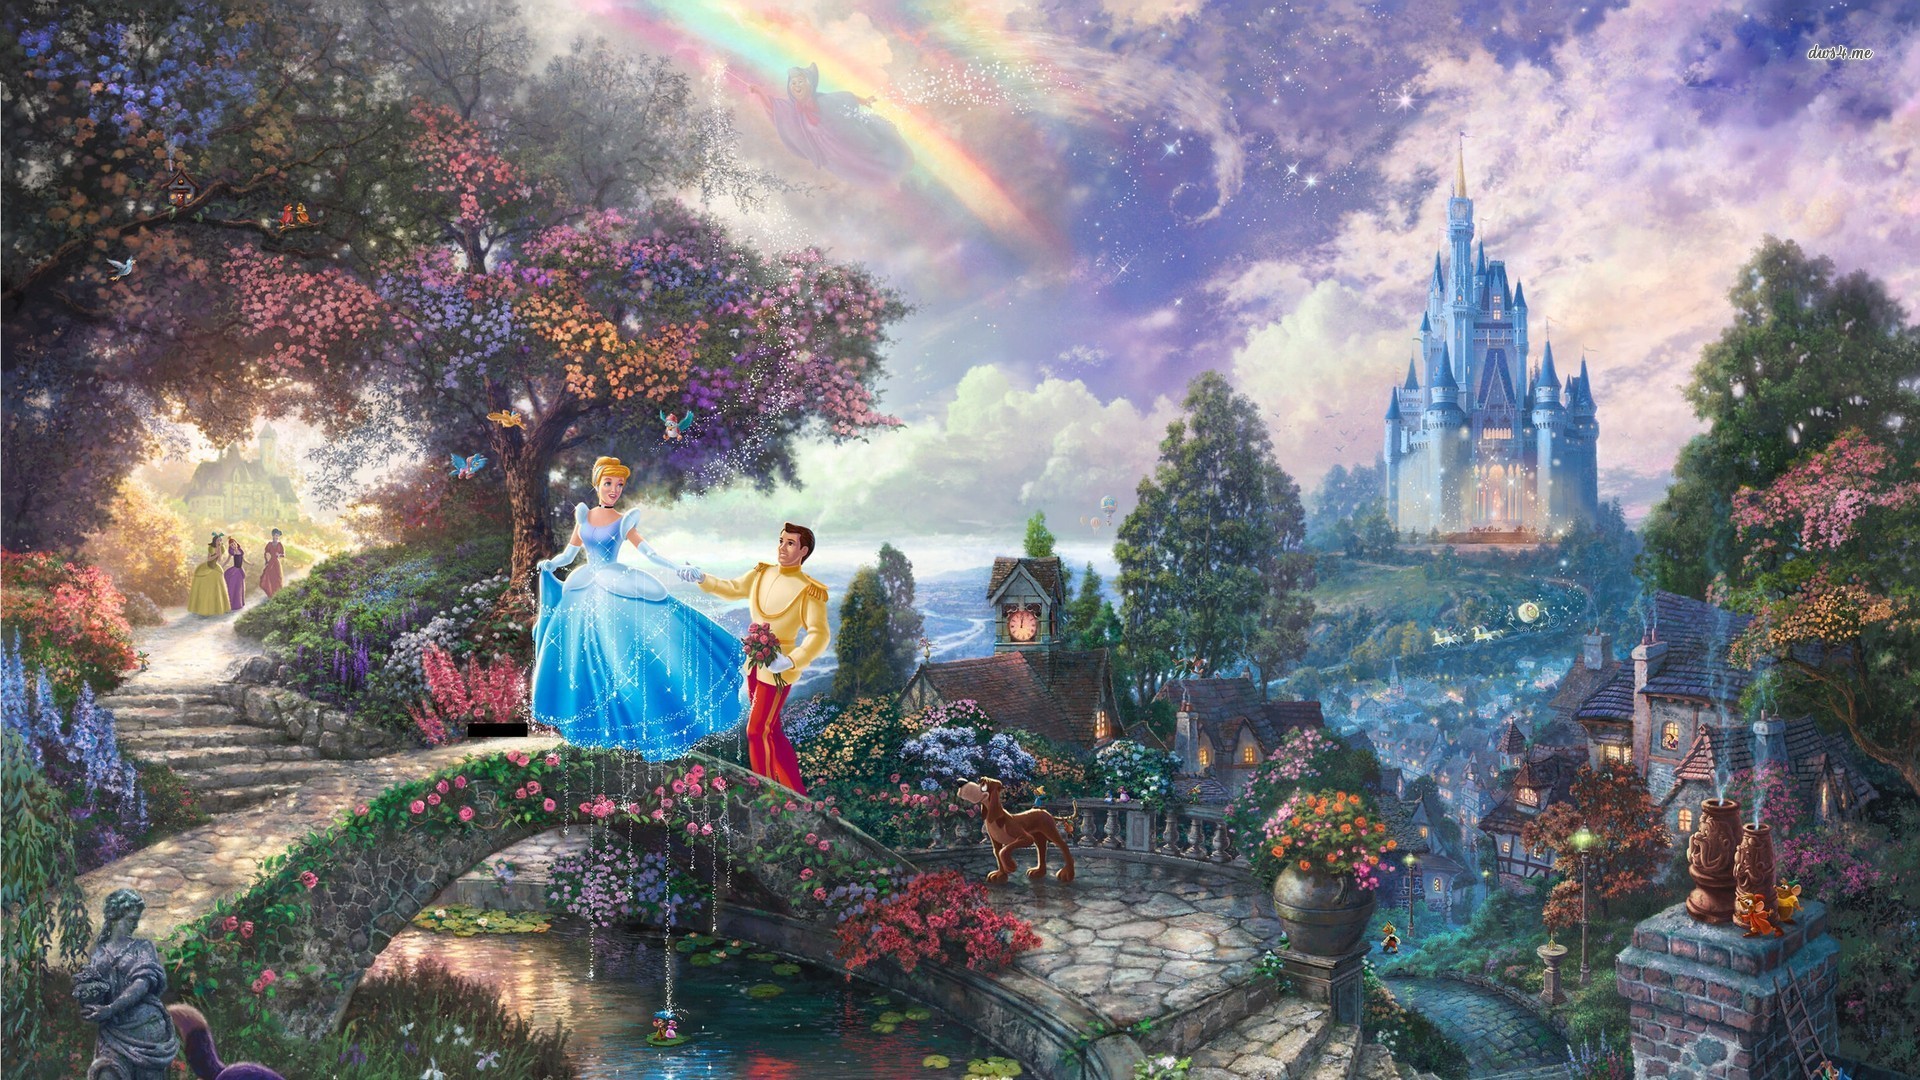 1920x1080 ... Cinderella and Prince Charming wallpaper ; more. Cartoons Â·  Castle Â· Bridge Â· Cinderella Â· Disney ...